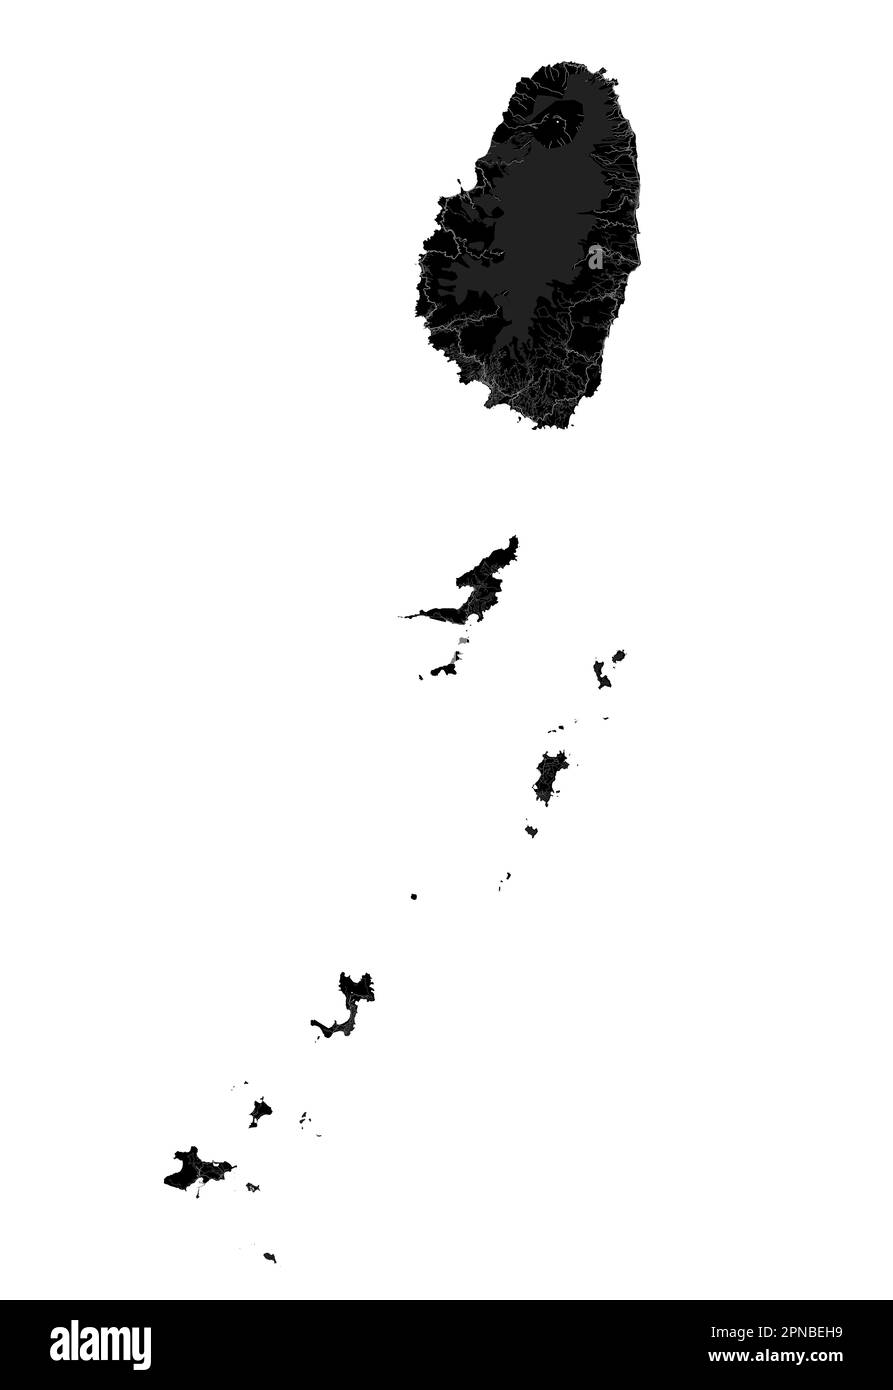 Carte noire de Saint Vincent et les Grenadines, pays insulaire des Caraïbes. Carte détaillée avec frontière administrative, littoral, mer et forêts, villes et Illustration de Vecteur